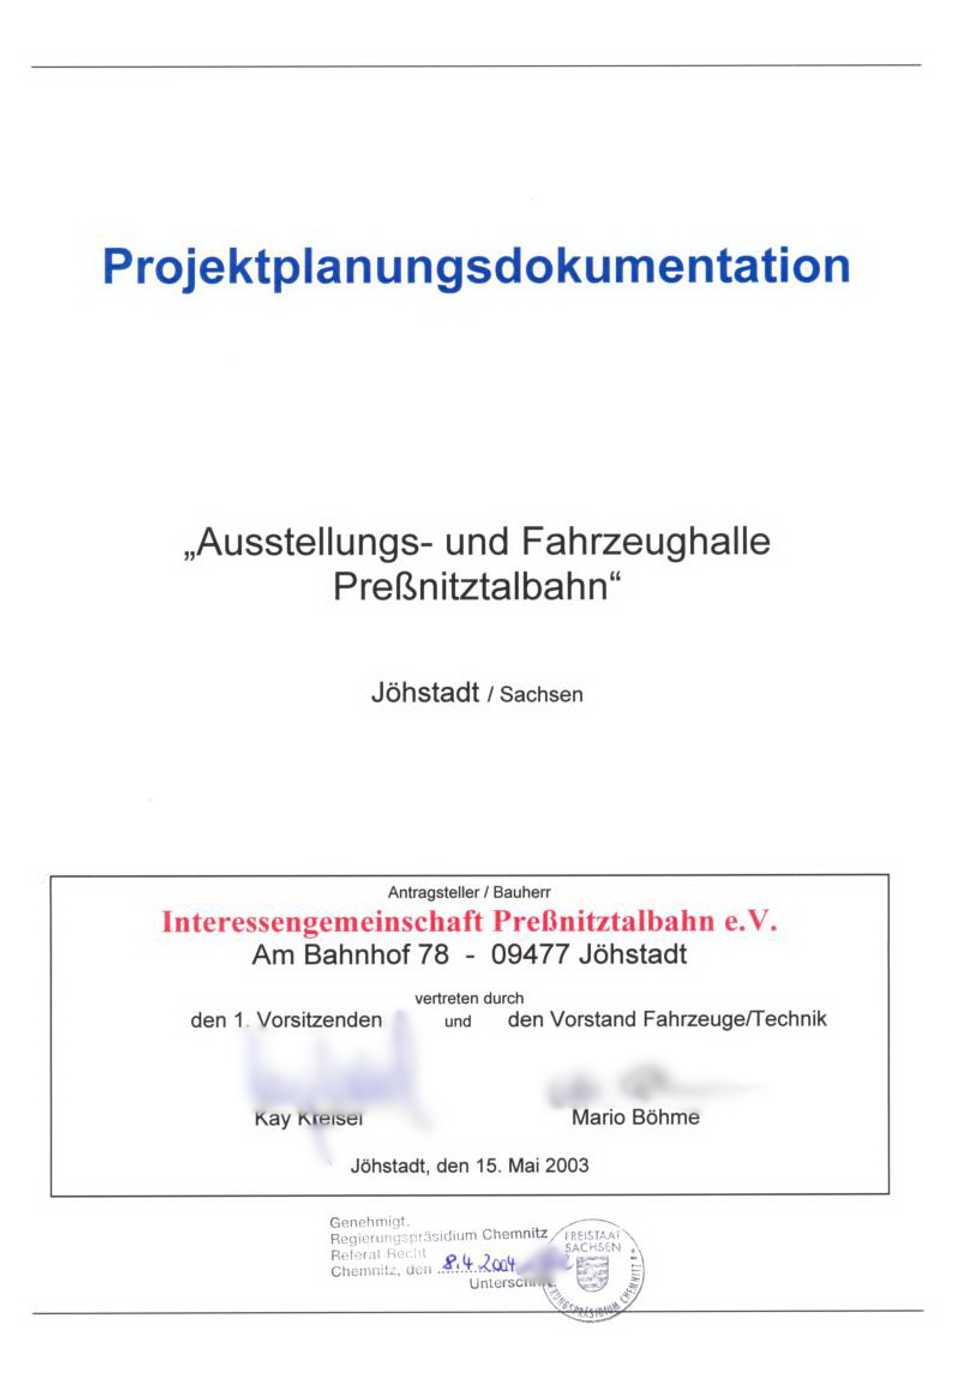 Deckblatt der „Projektplanungsdokumentation“ zur Erlangung der Plangenehmigung.